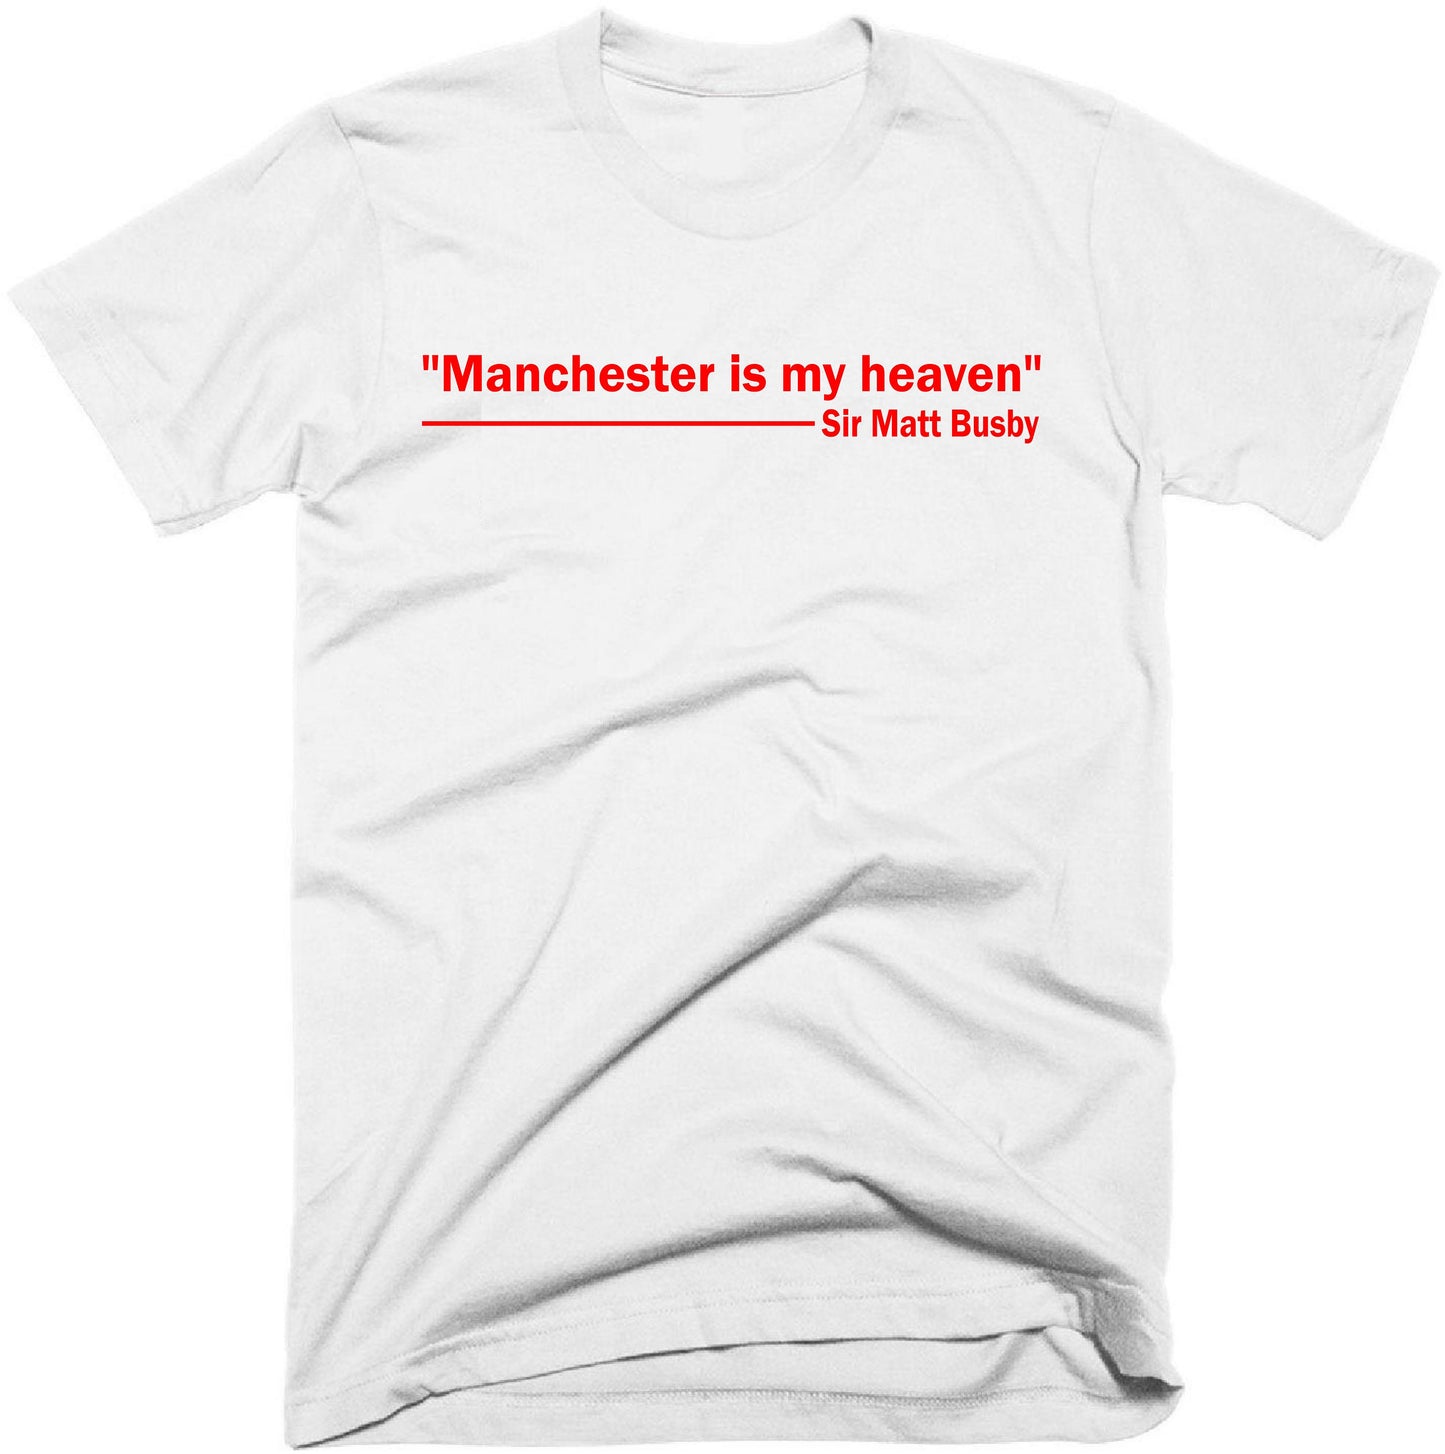 Manchester is my heaven, Sir Matt Busby t-shirt